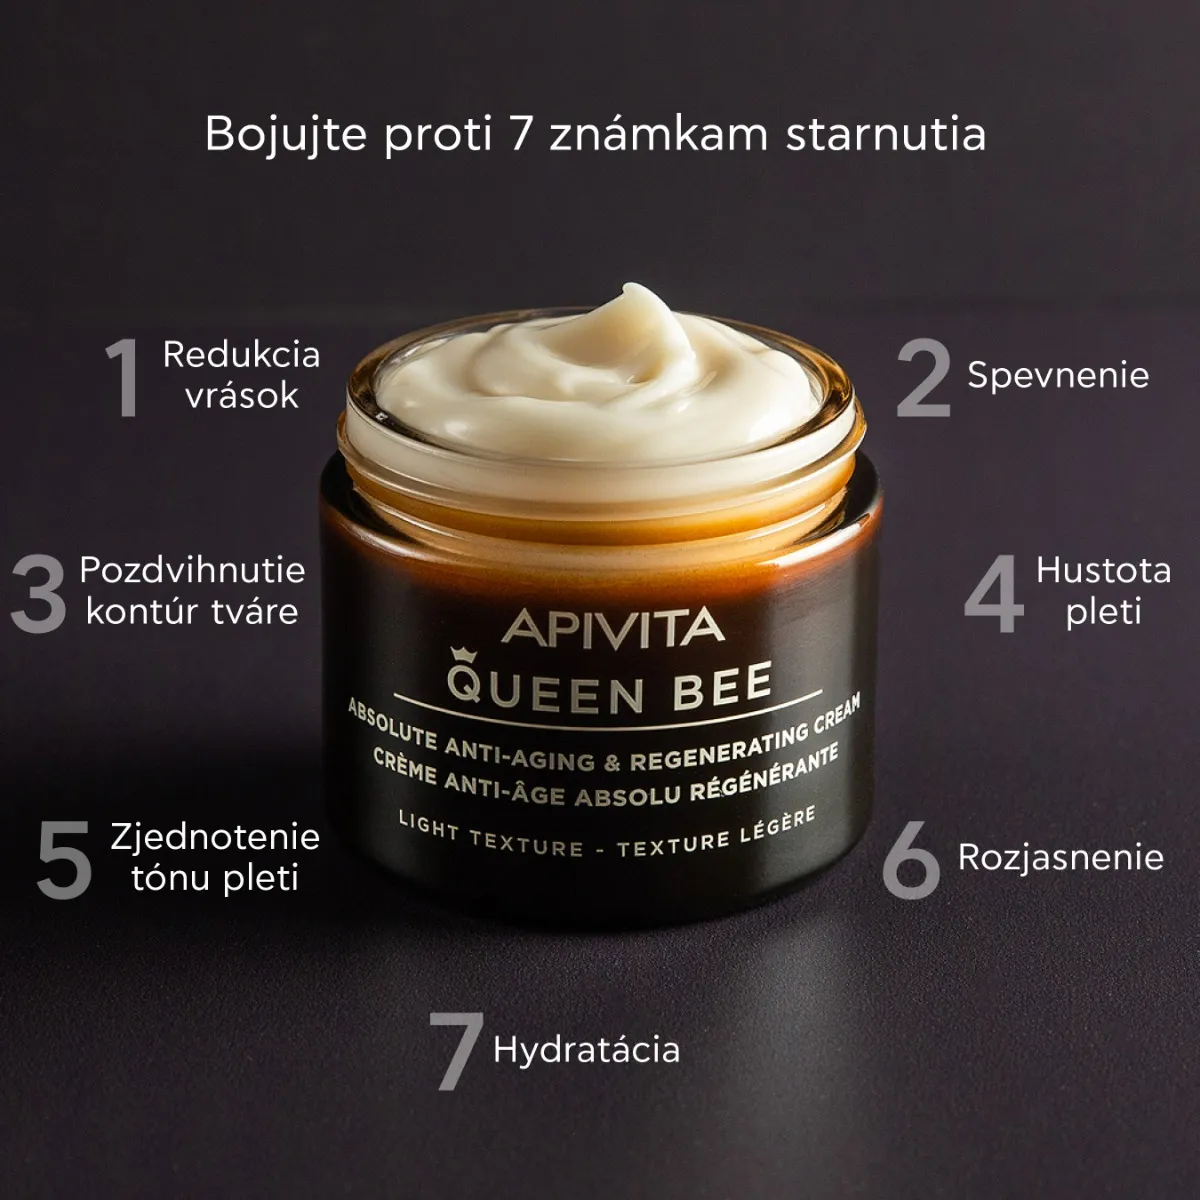 APIVITA Queen Bee Age Defense LIGHT Cream, 50ml 1×50 ml ľahký výživný anti-age krém